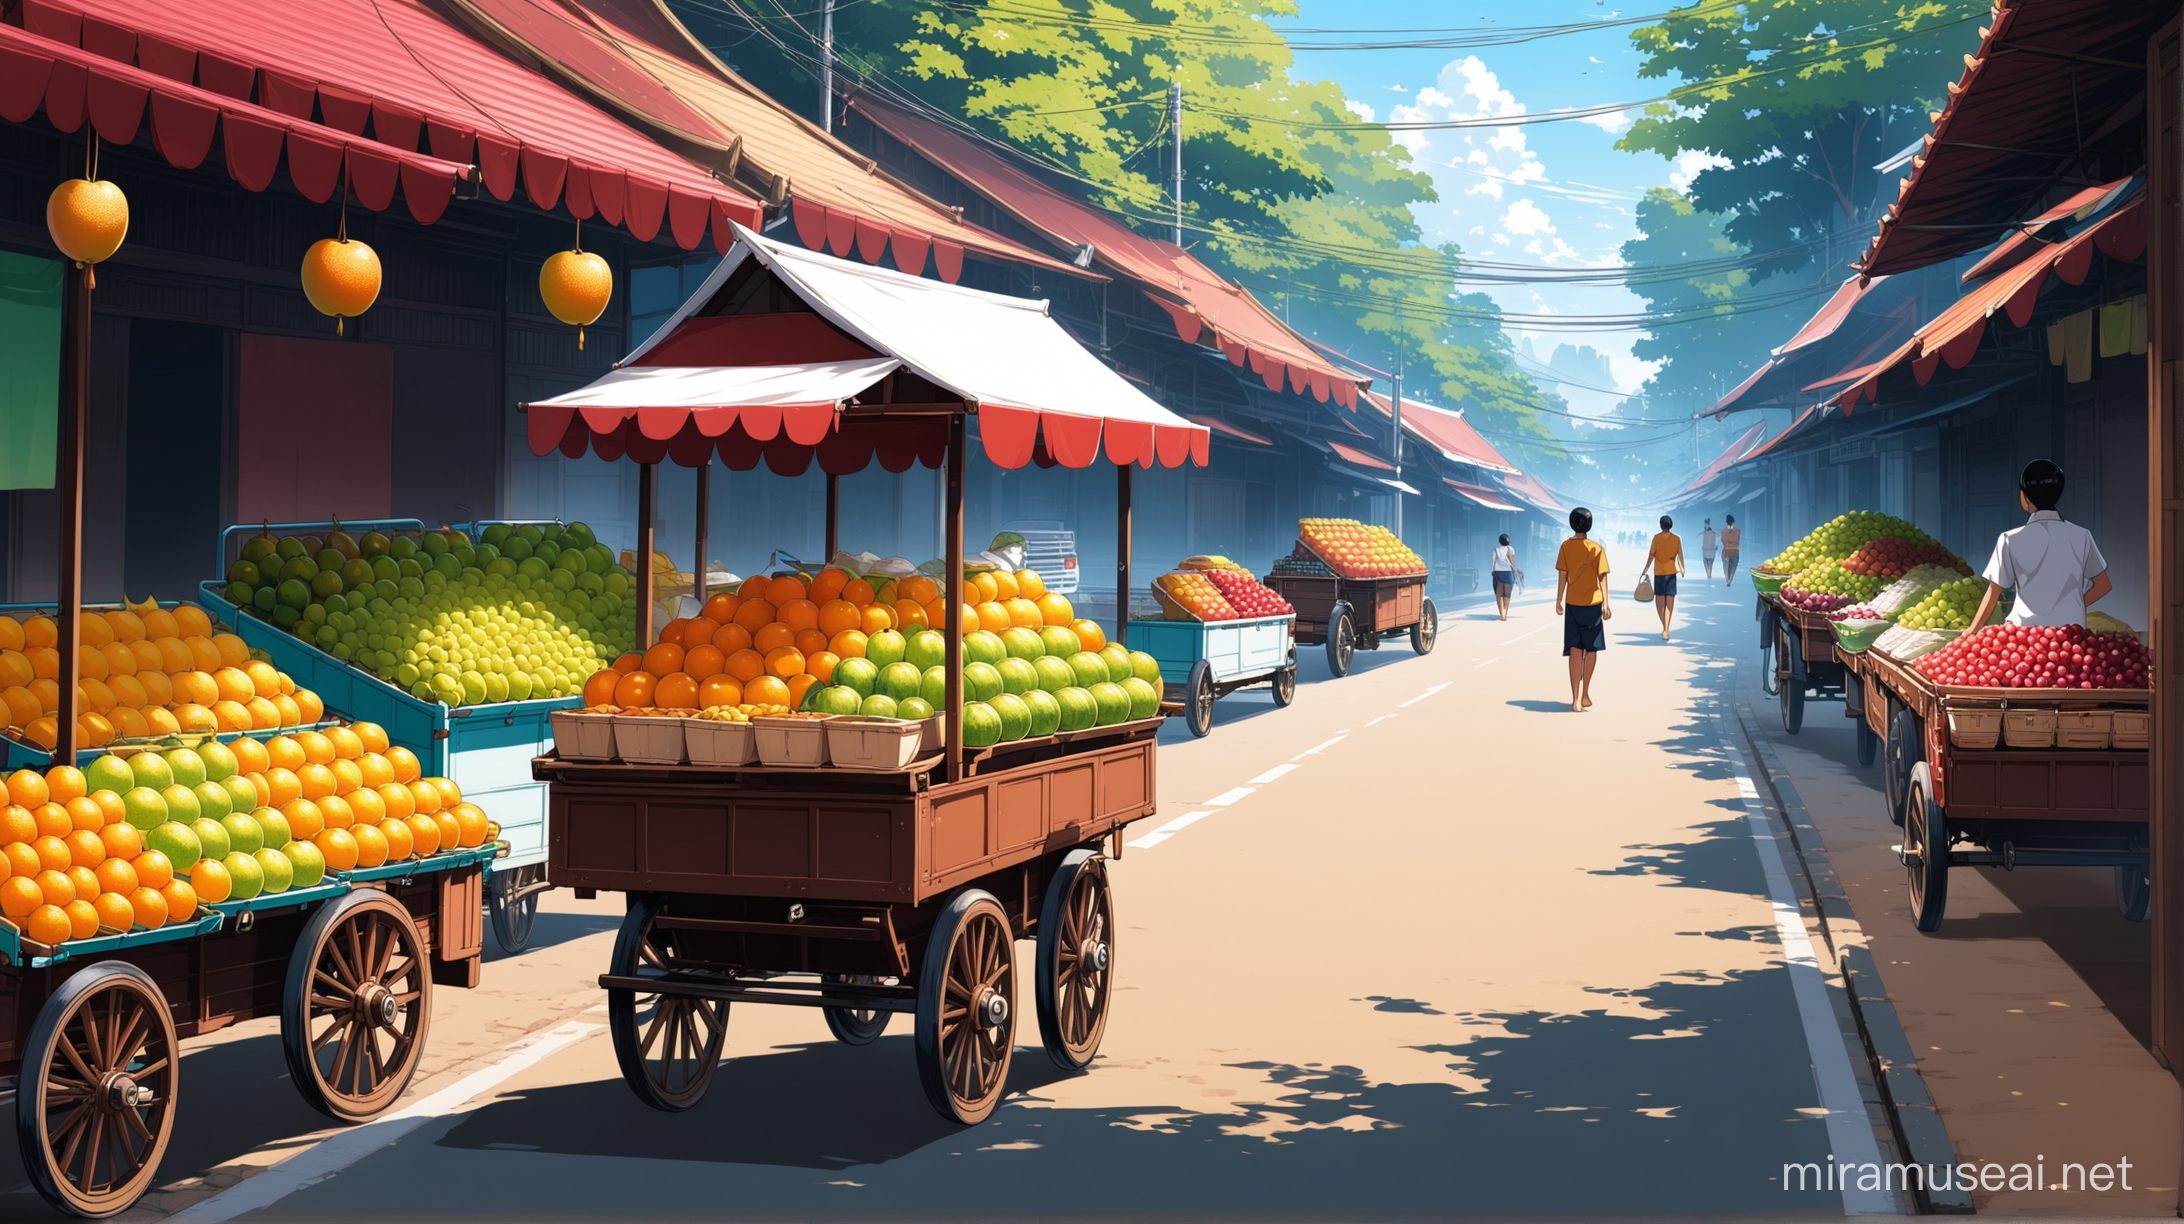 Anime Street Vendor Selling Fresh Fruit in Thailand